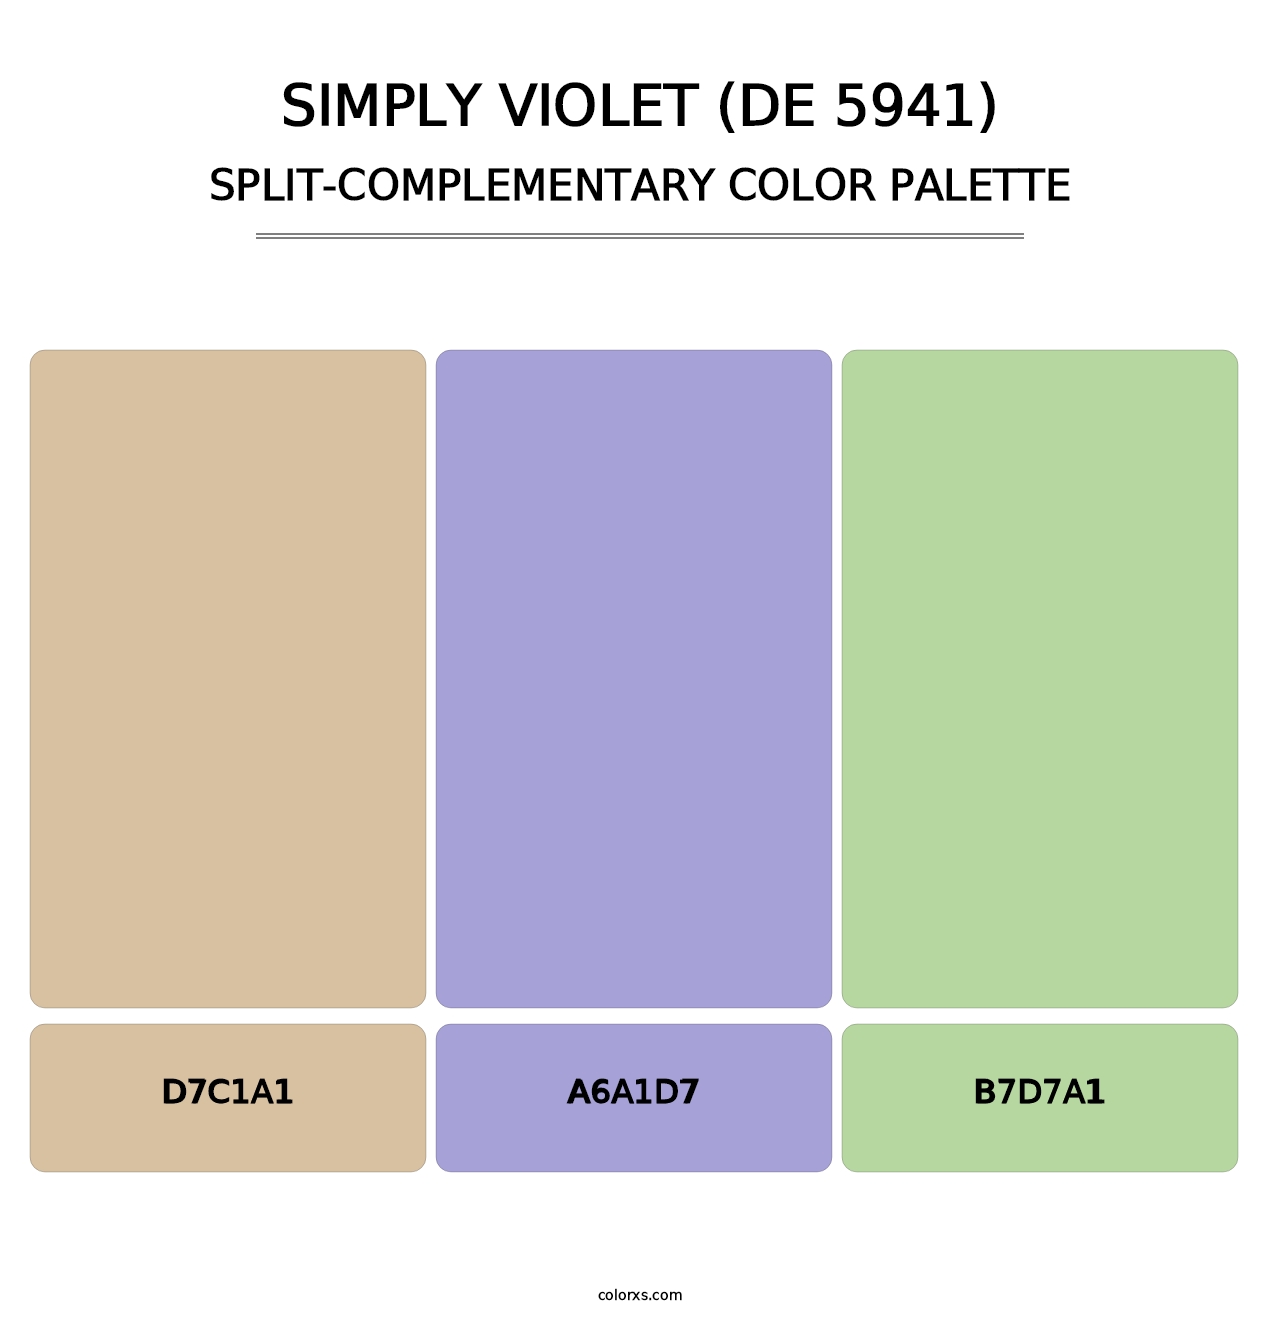 Simply Violet (DE 5941) - Split-Complementary Color Palette